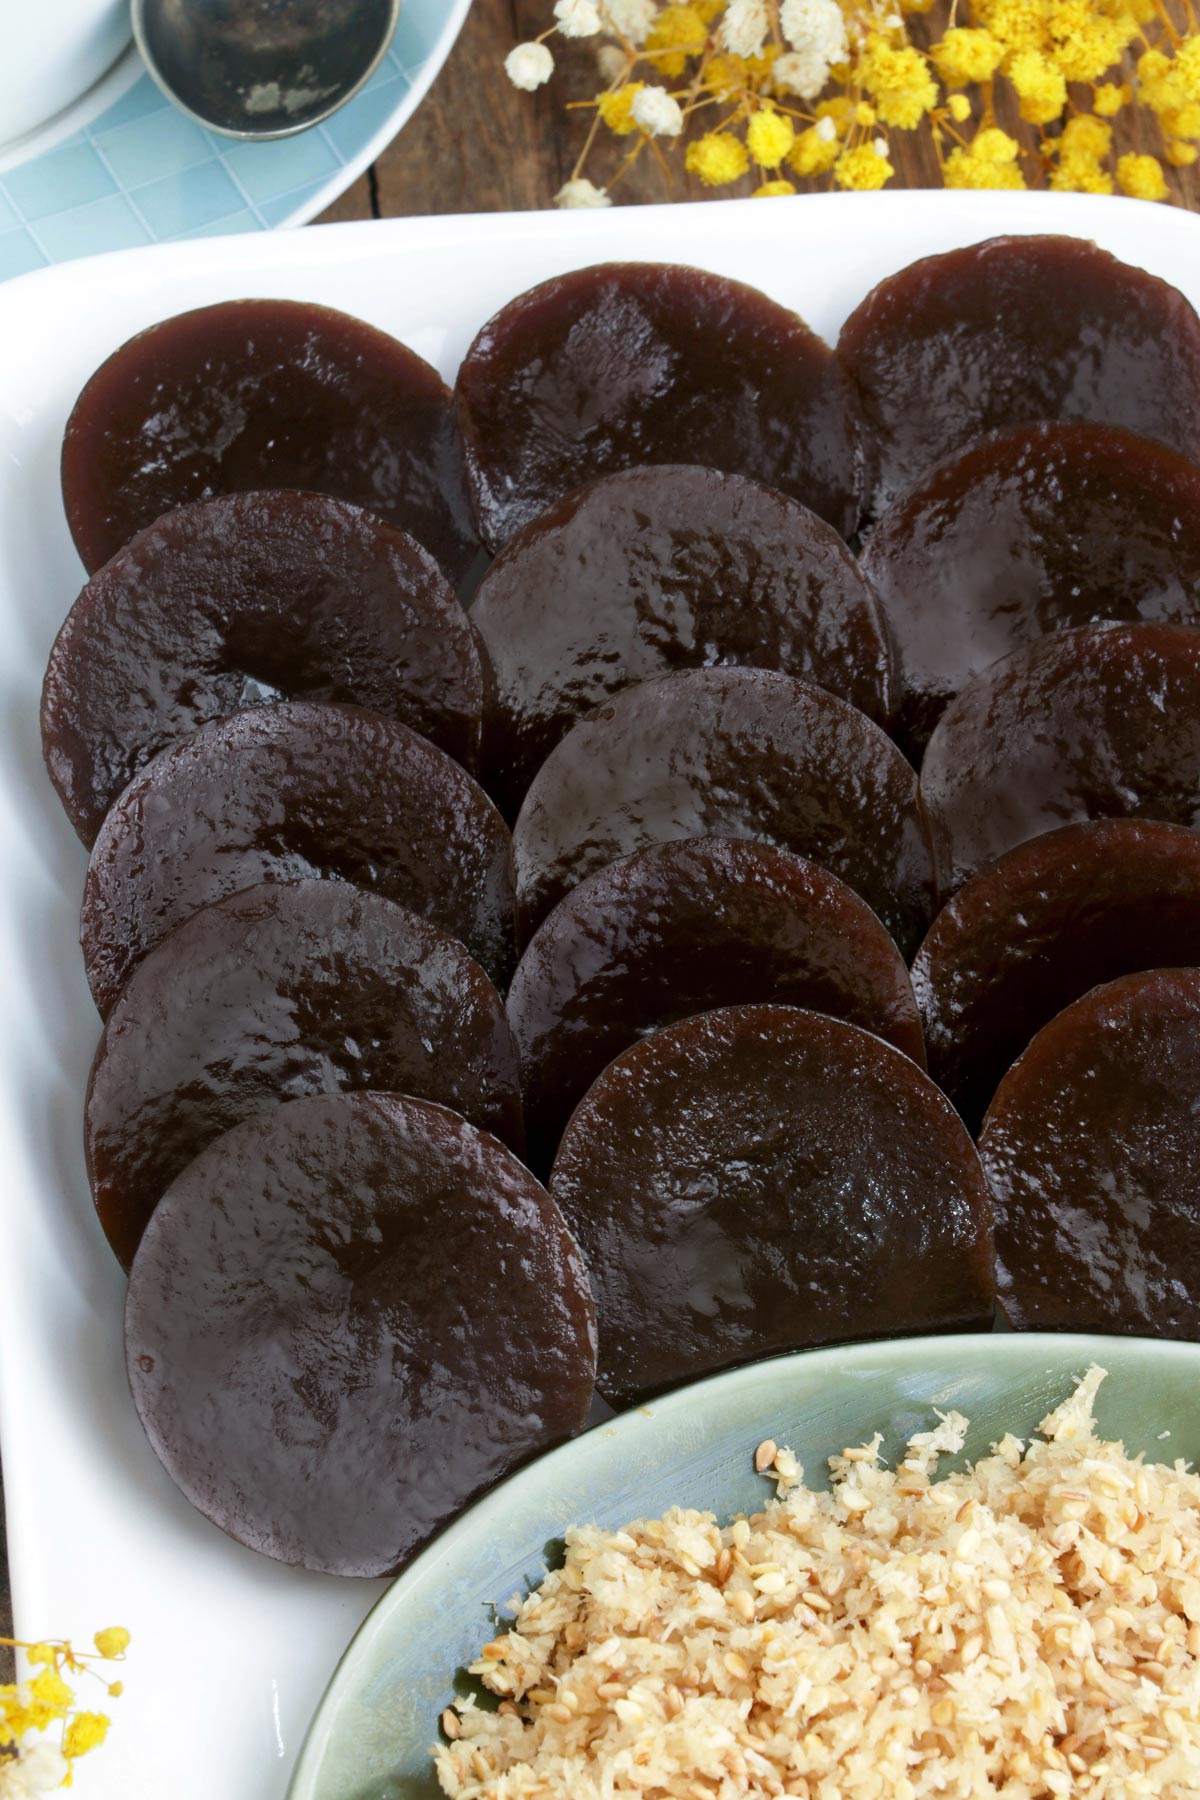 Black Kutsinta with blackstrap molasses for a richer flavor and darker color.